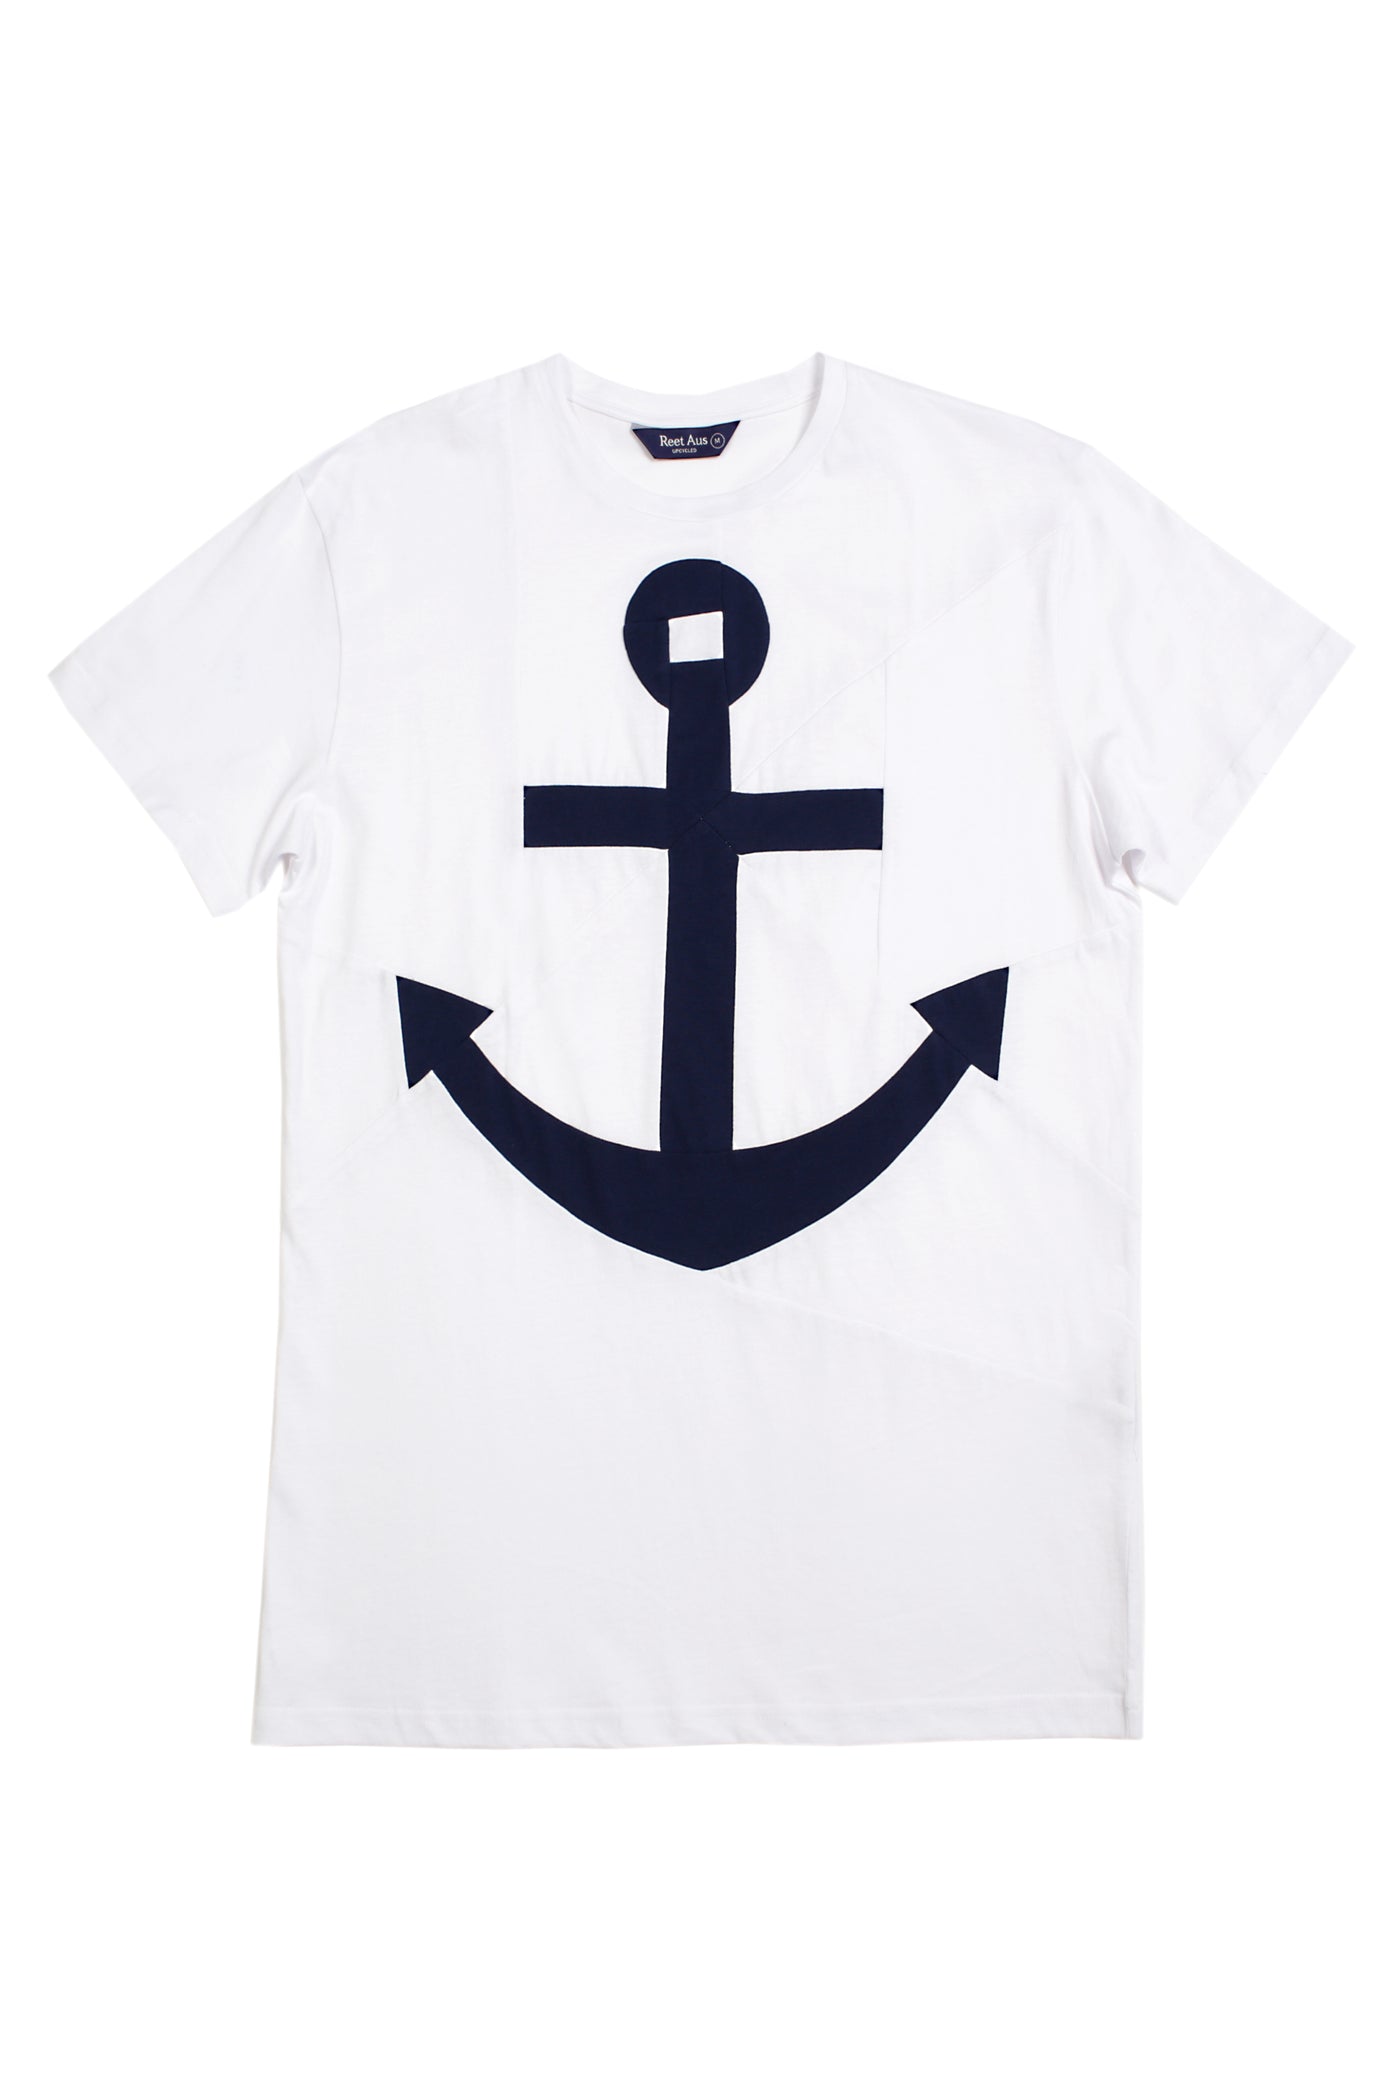 Up-shirt for women, anchor motif | White, dark blue - Reet Aus